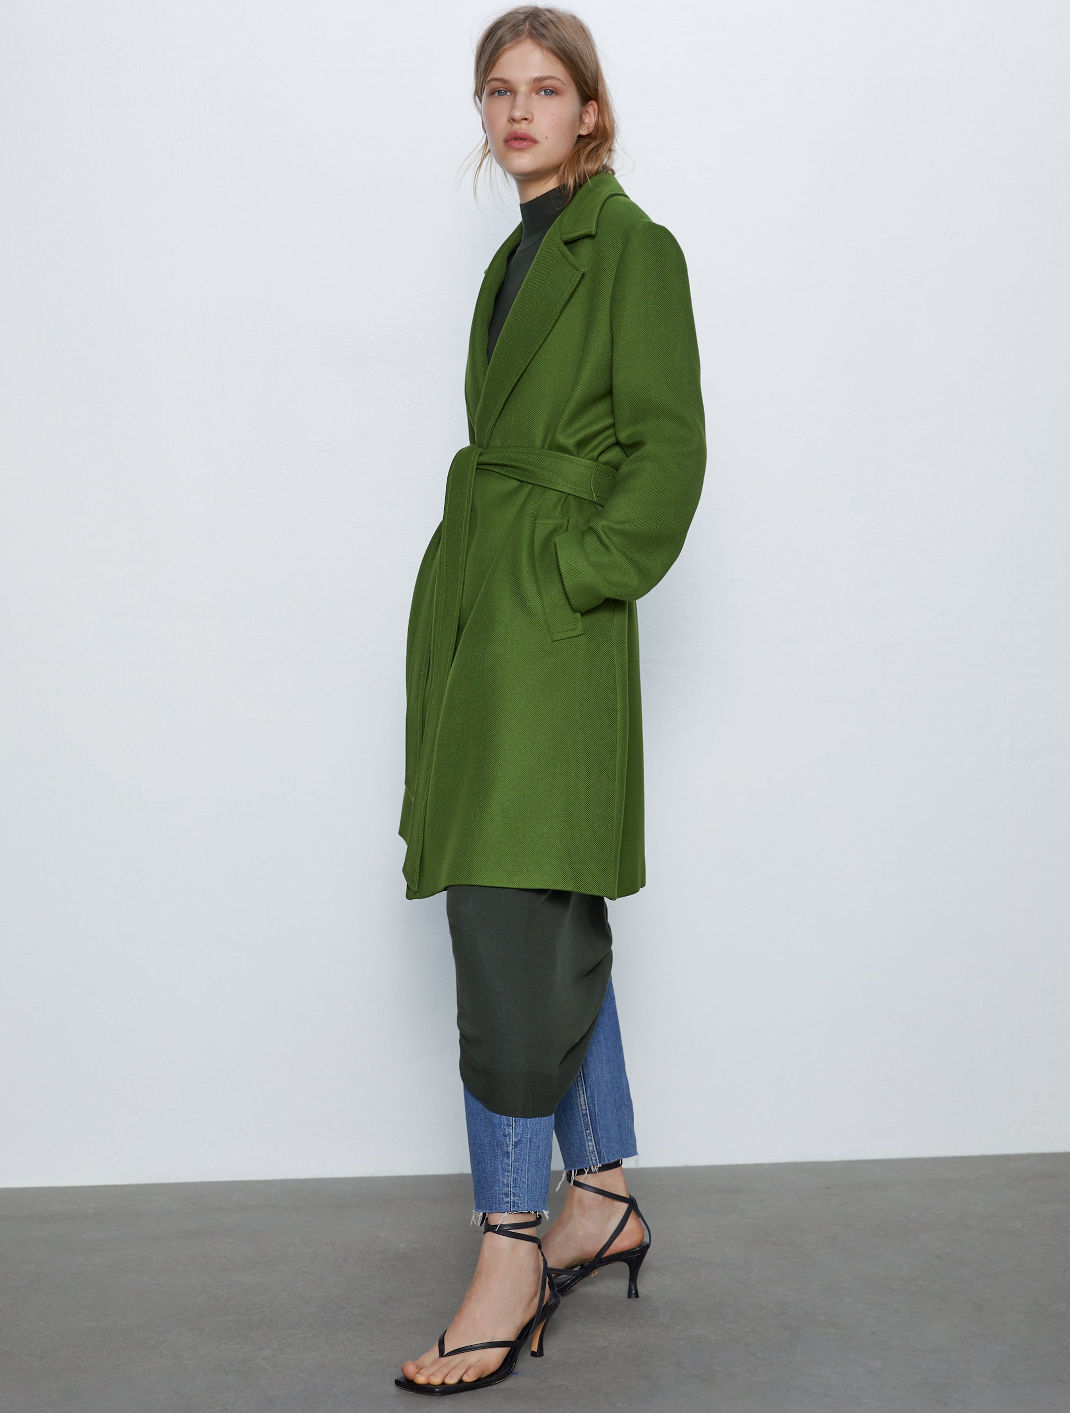 μοντέλο με πράσινο παλτό Zara